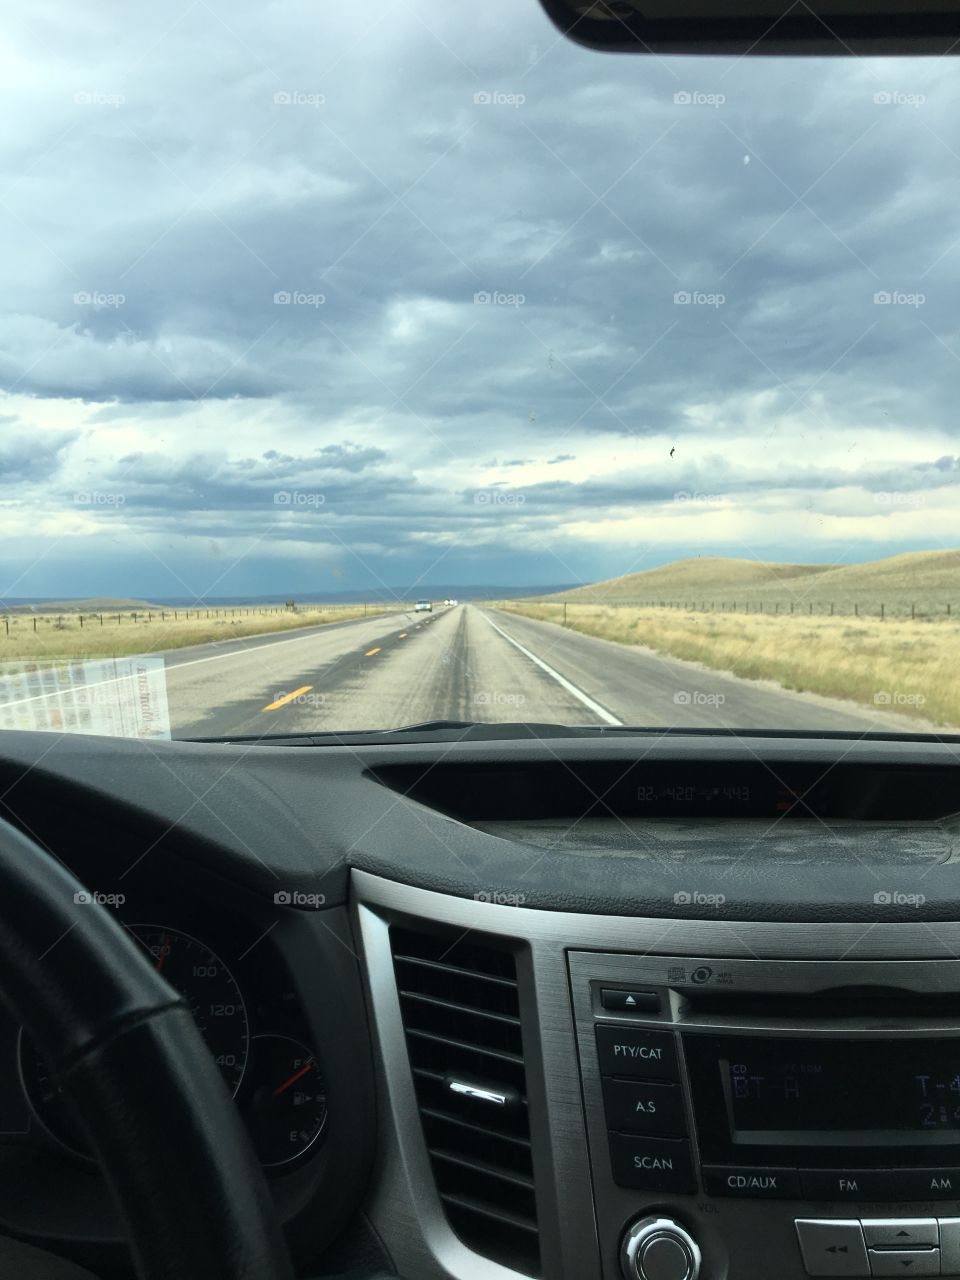 Stormy skies in Wyoming b